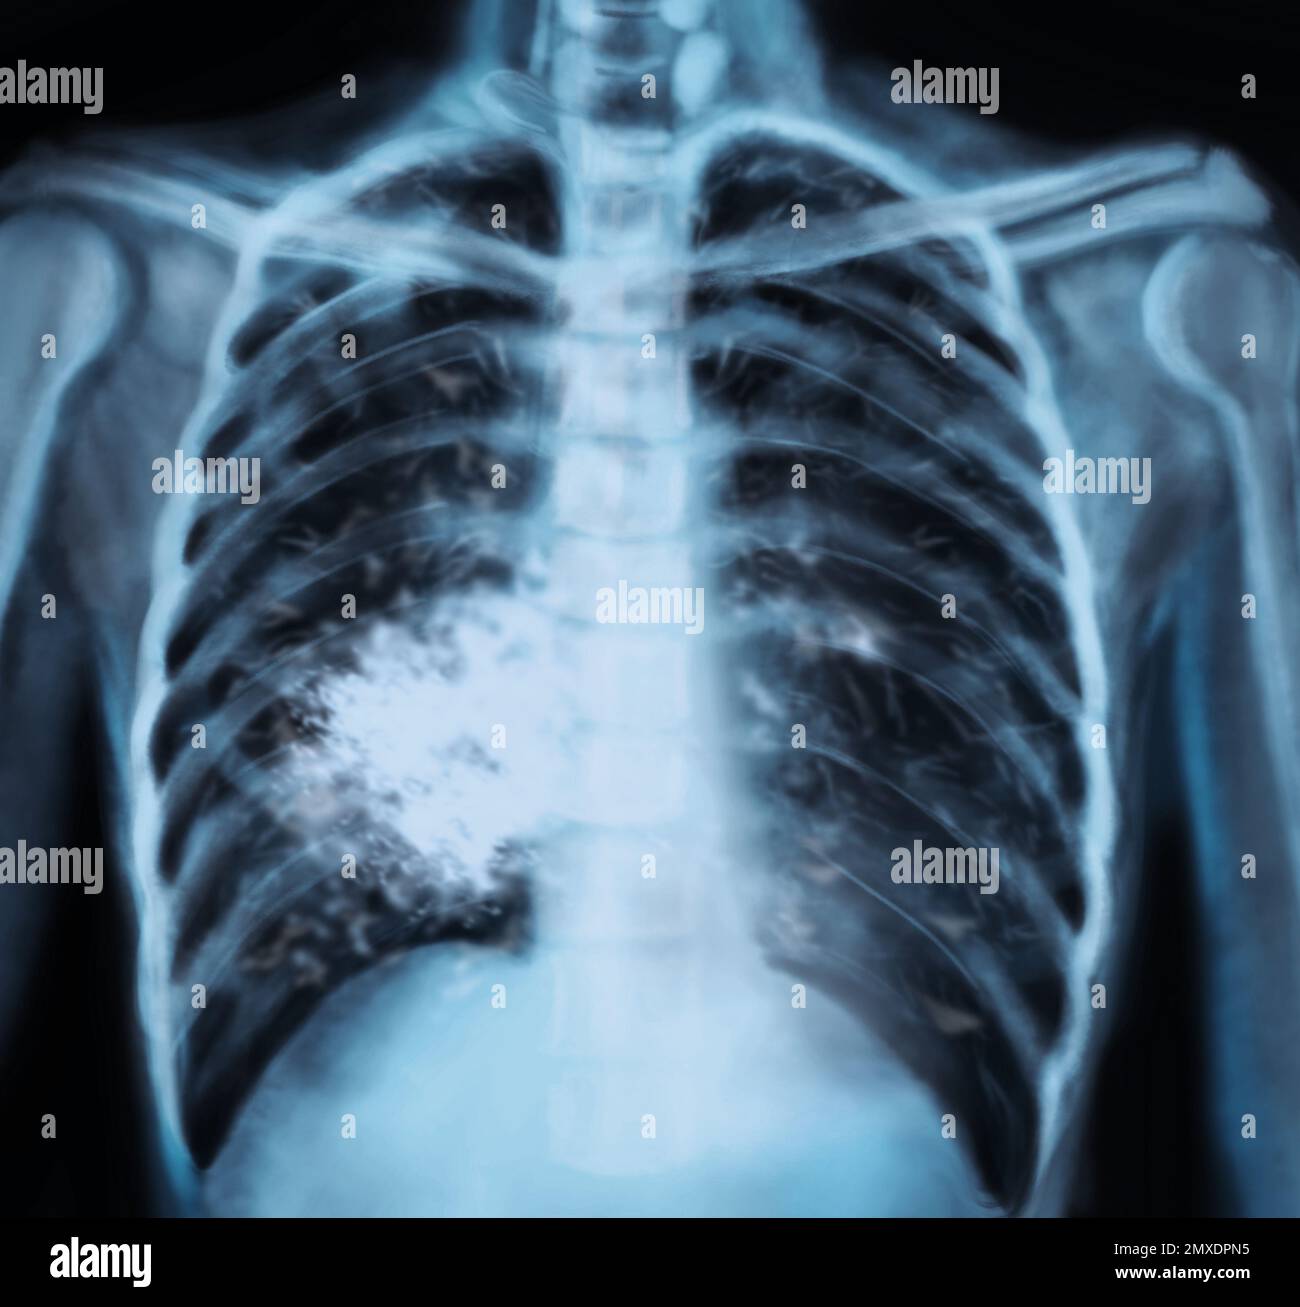 Rayons X du patient atteint d'un cancer du poumon. Illustration ...